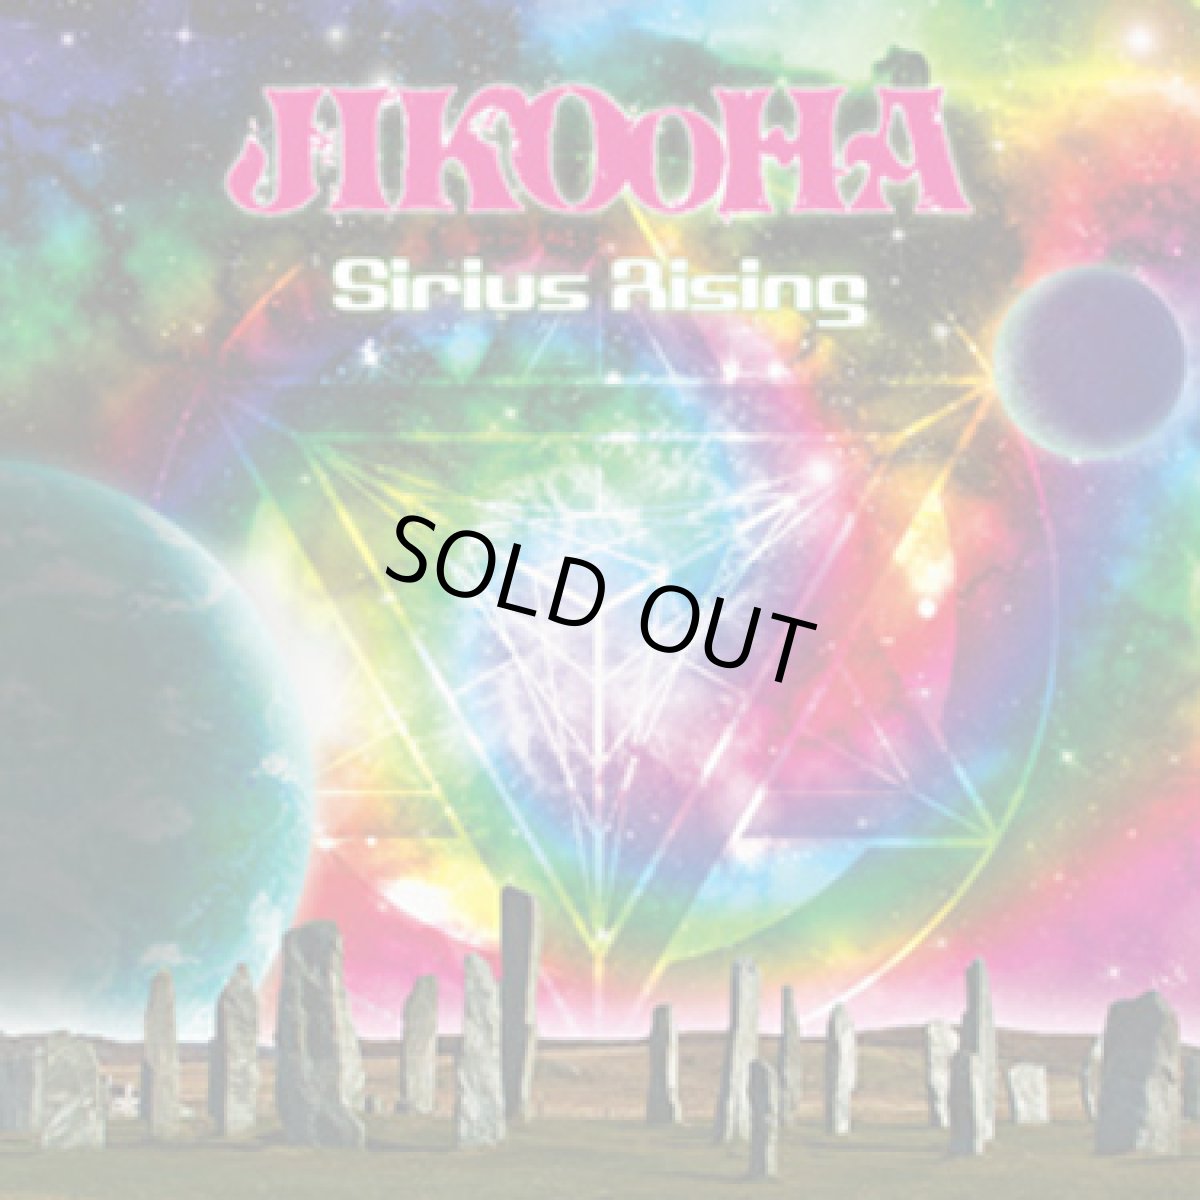 画像1: CD「JIKOOHA / Sirius Rising」【ゴアトランス・PSYトランス】 (1)